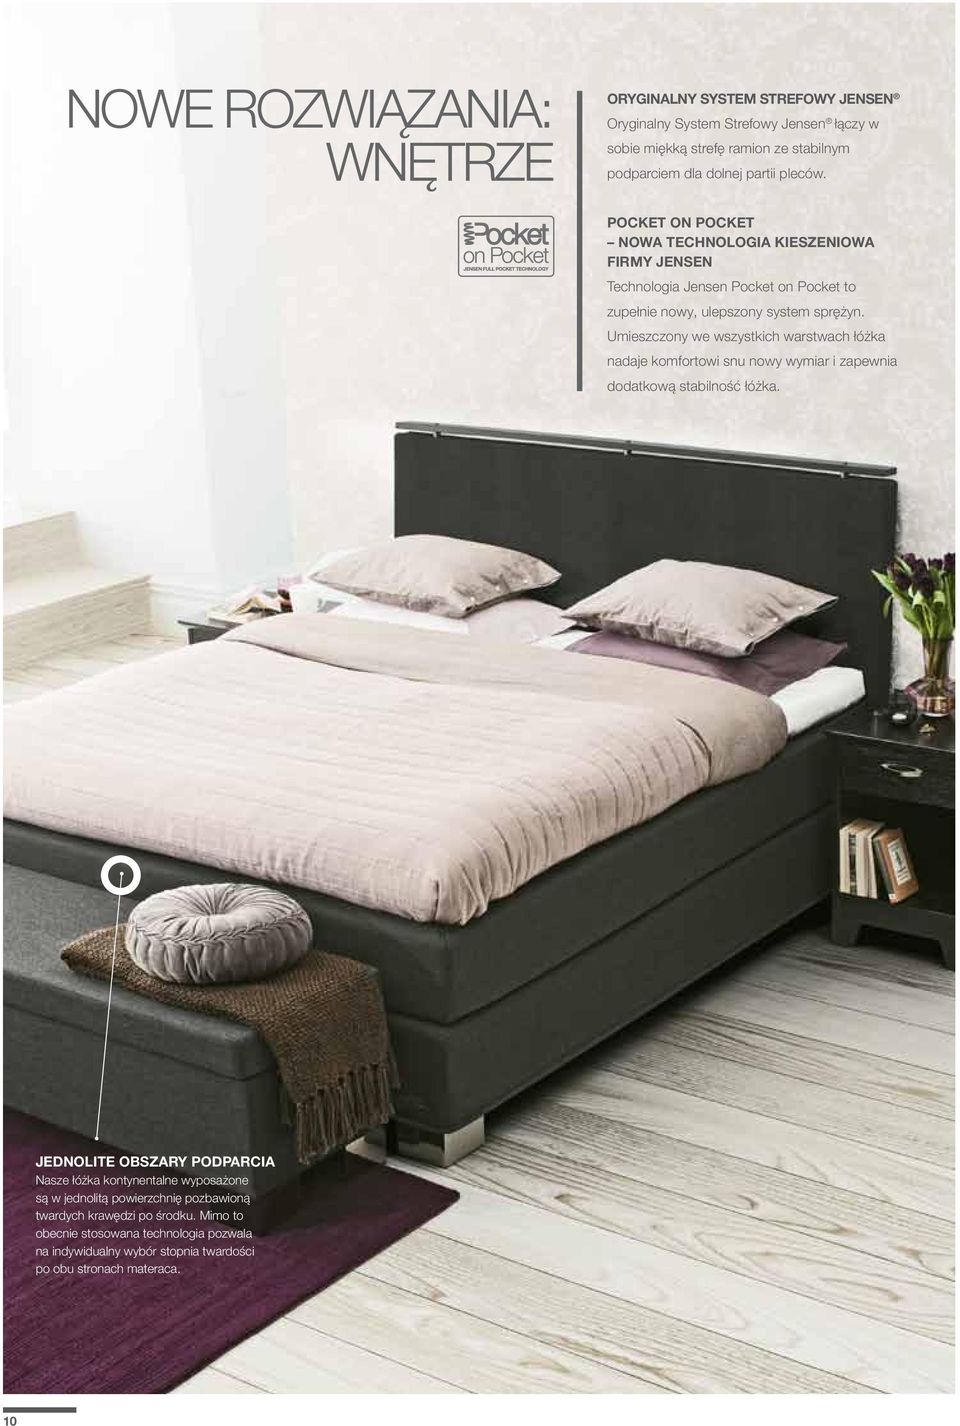 Umieszczony we wszystkich warstwach łóżka nadaje komfortowi snu nowy wymiar i zapewnia dodatkową stabilność łóżka.